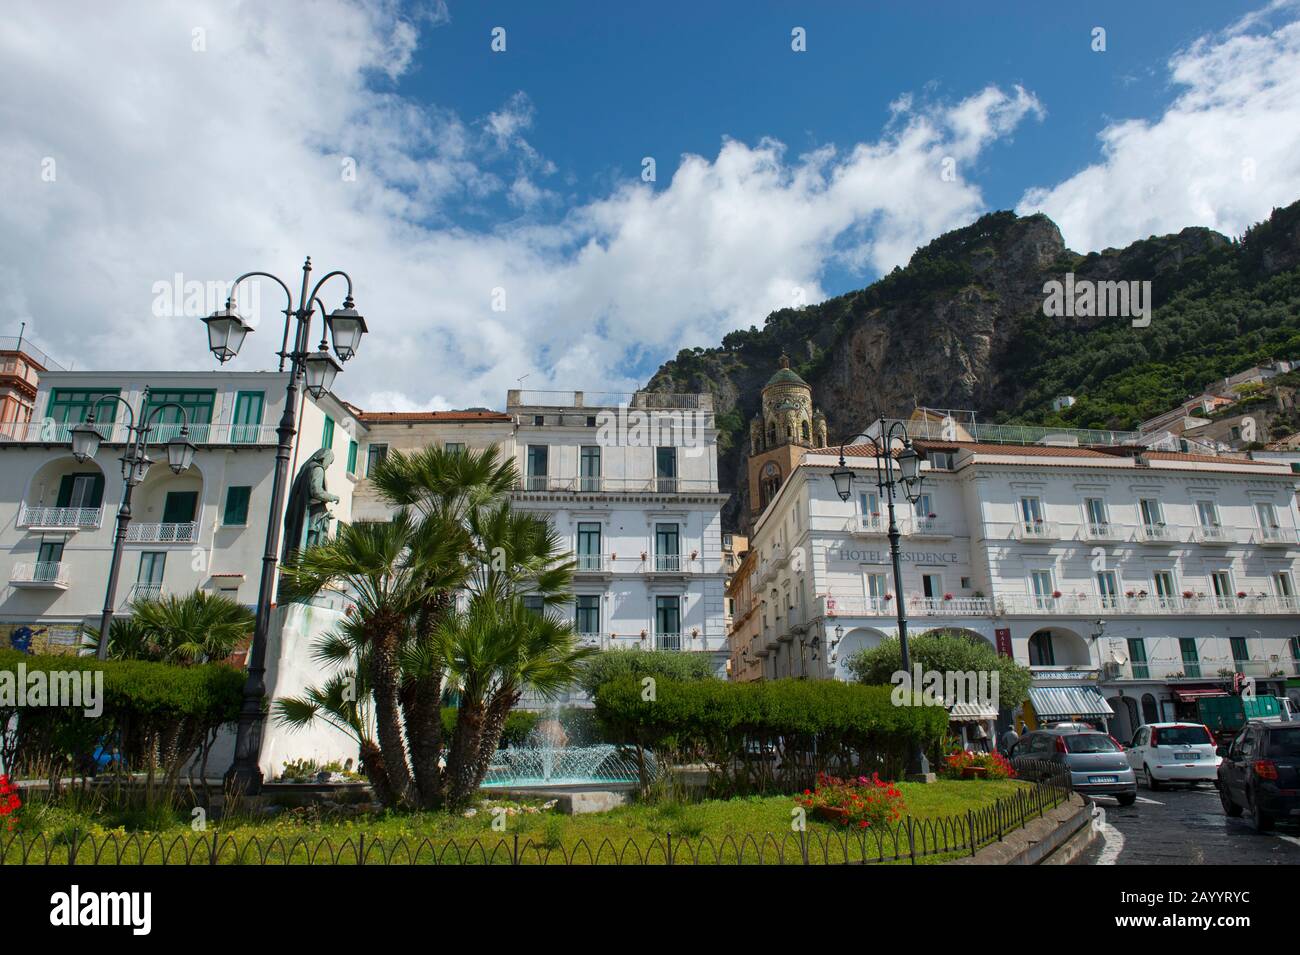 Le centre-ville d'Amalfi dans la province de Salerne dans la région de Campanie au sud-ouest de l'Italie, situé sur la côte amalfitaine. Banque D'Images